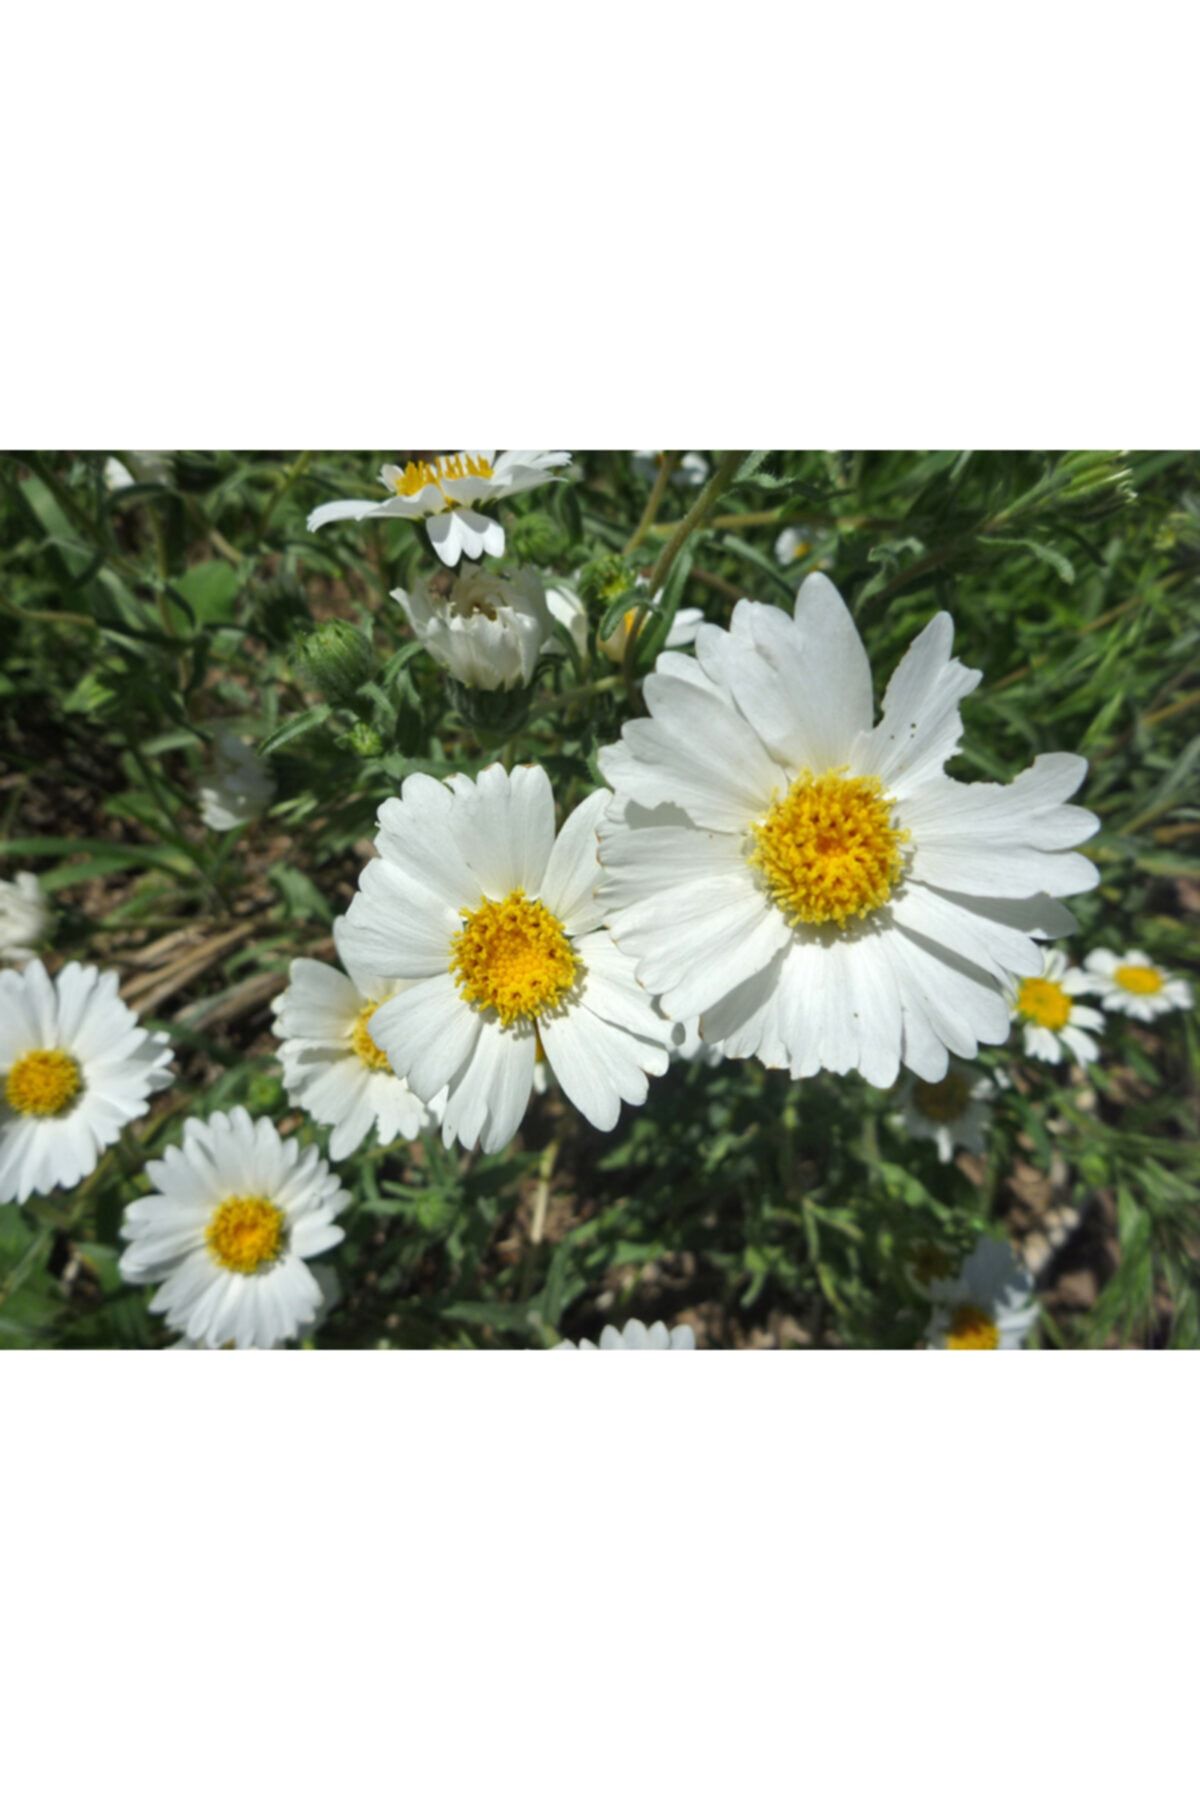 KAMONDO TOHUM 10 Adet Beyaz Renkli Layia Çiçek Tohumu